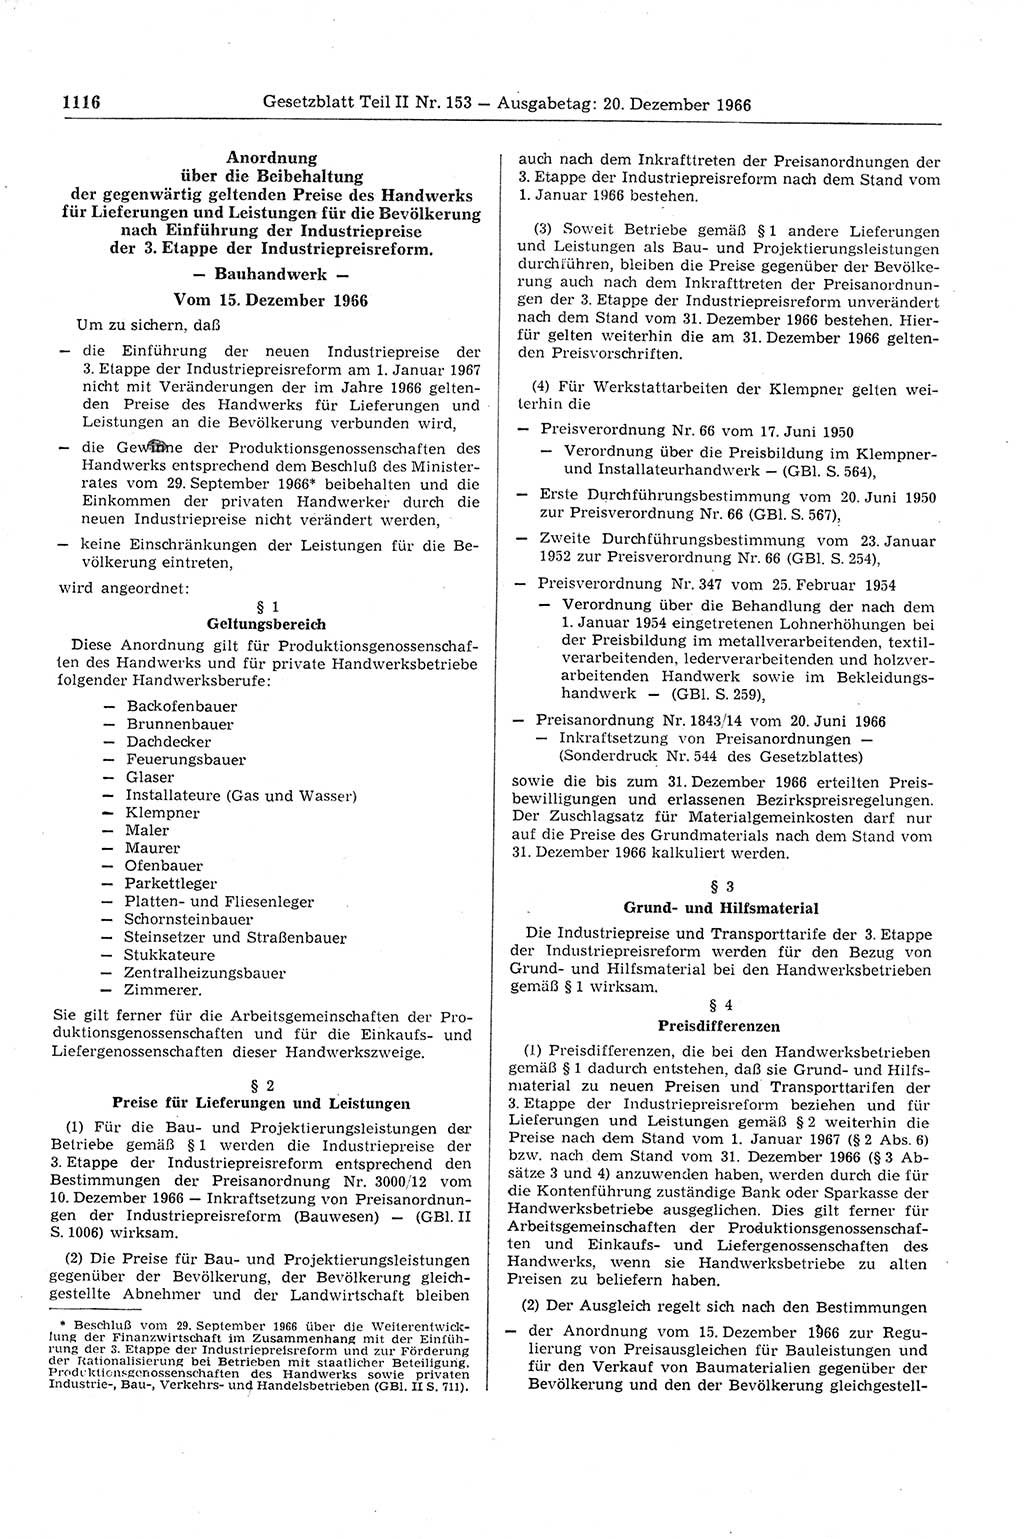 Gesetzblatt (GBl.) der Deutschen Demokratischen Republik (DDR) Teil ⅠⅠ 1966, Seite 1116 (GBl. DDR ⅠⅠ 1966, S. 1116)